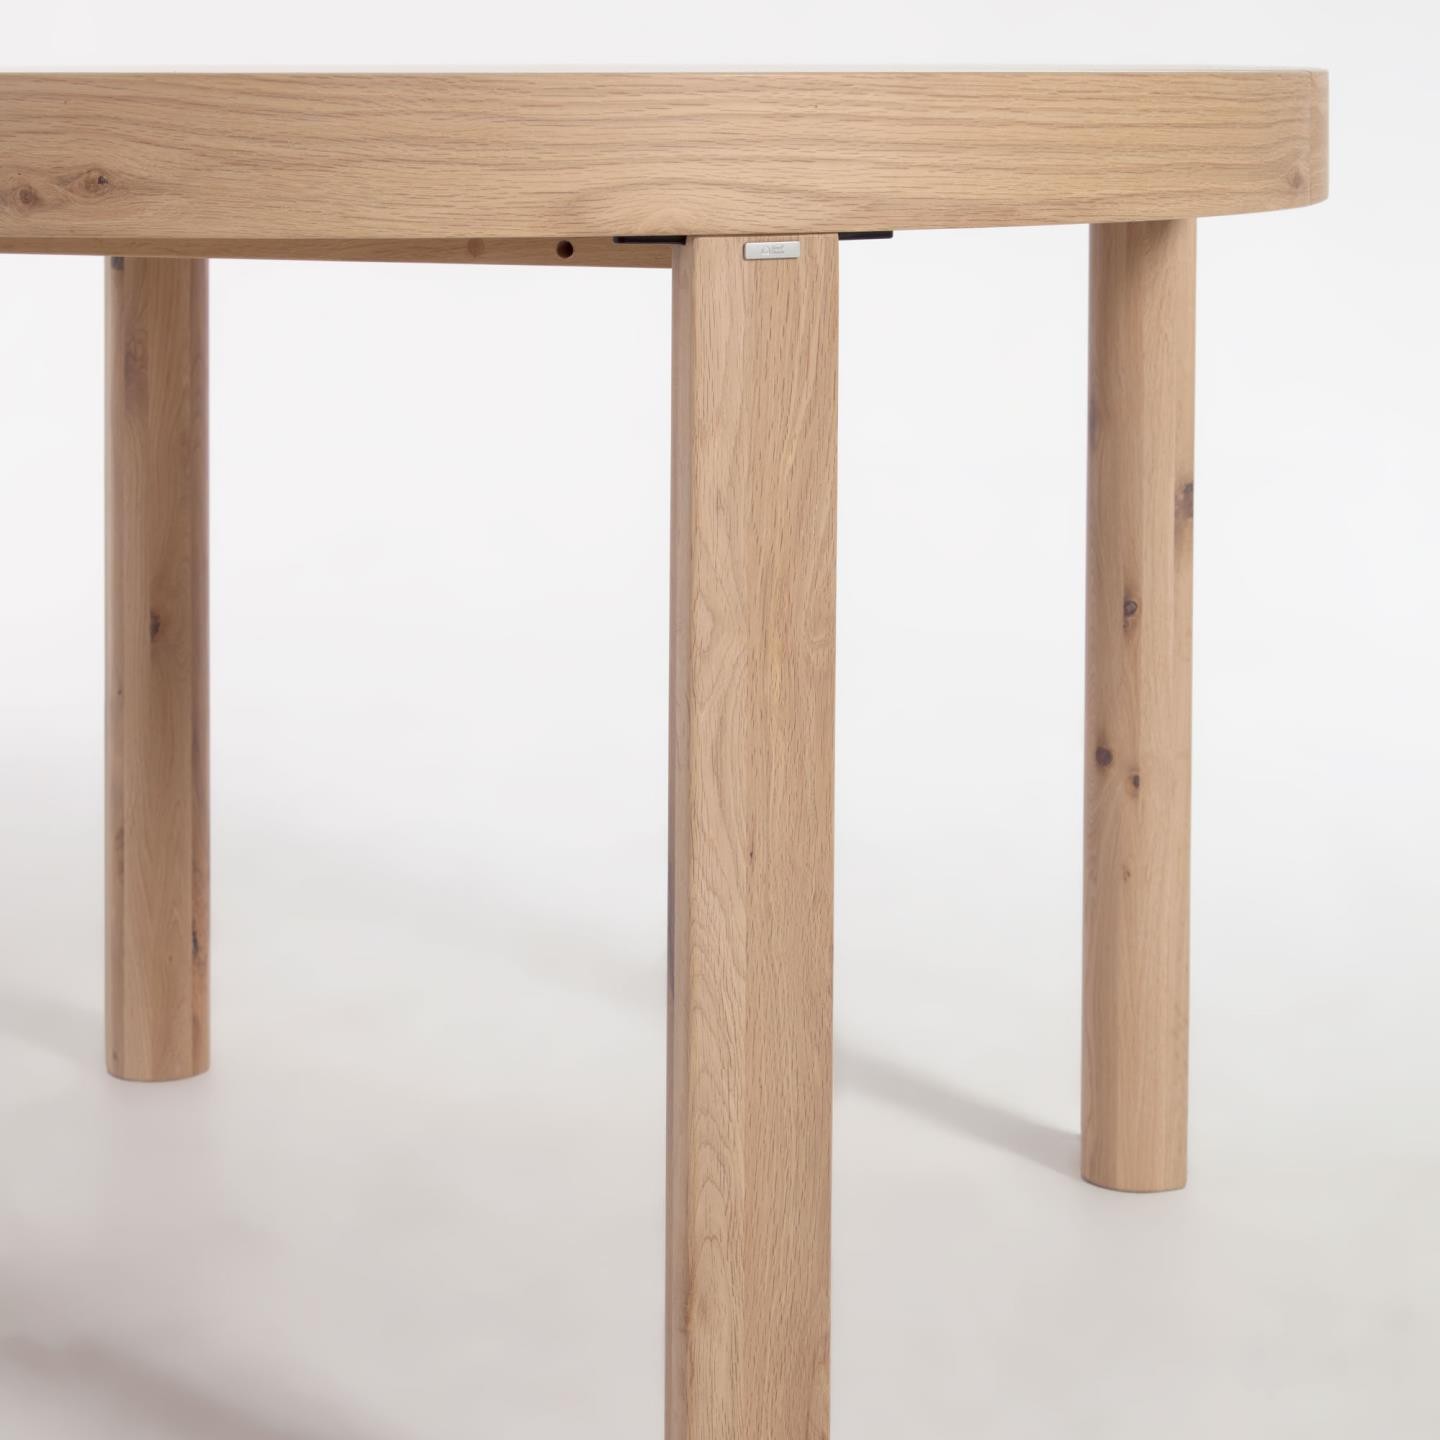 Okrągły stół rozkładany Colleen fornir dębowy, nogi z litego drewna Ø120(170) x 120 cm